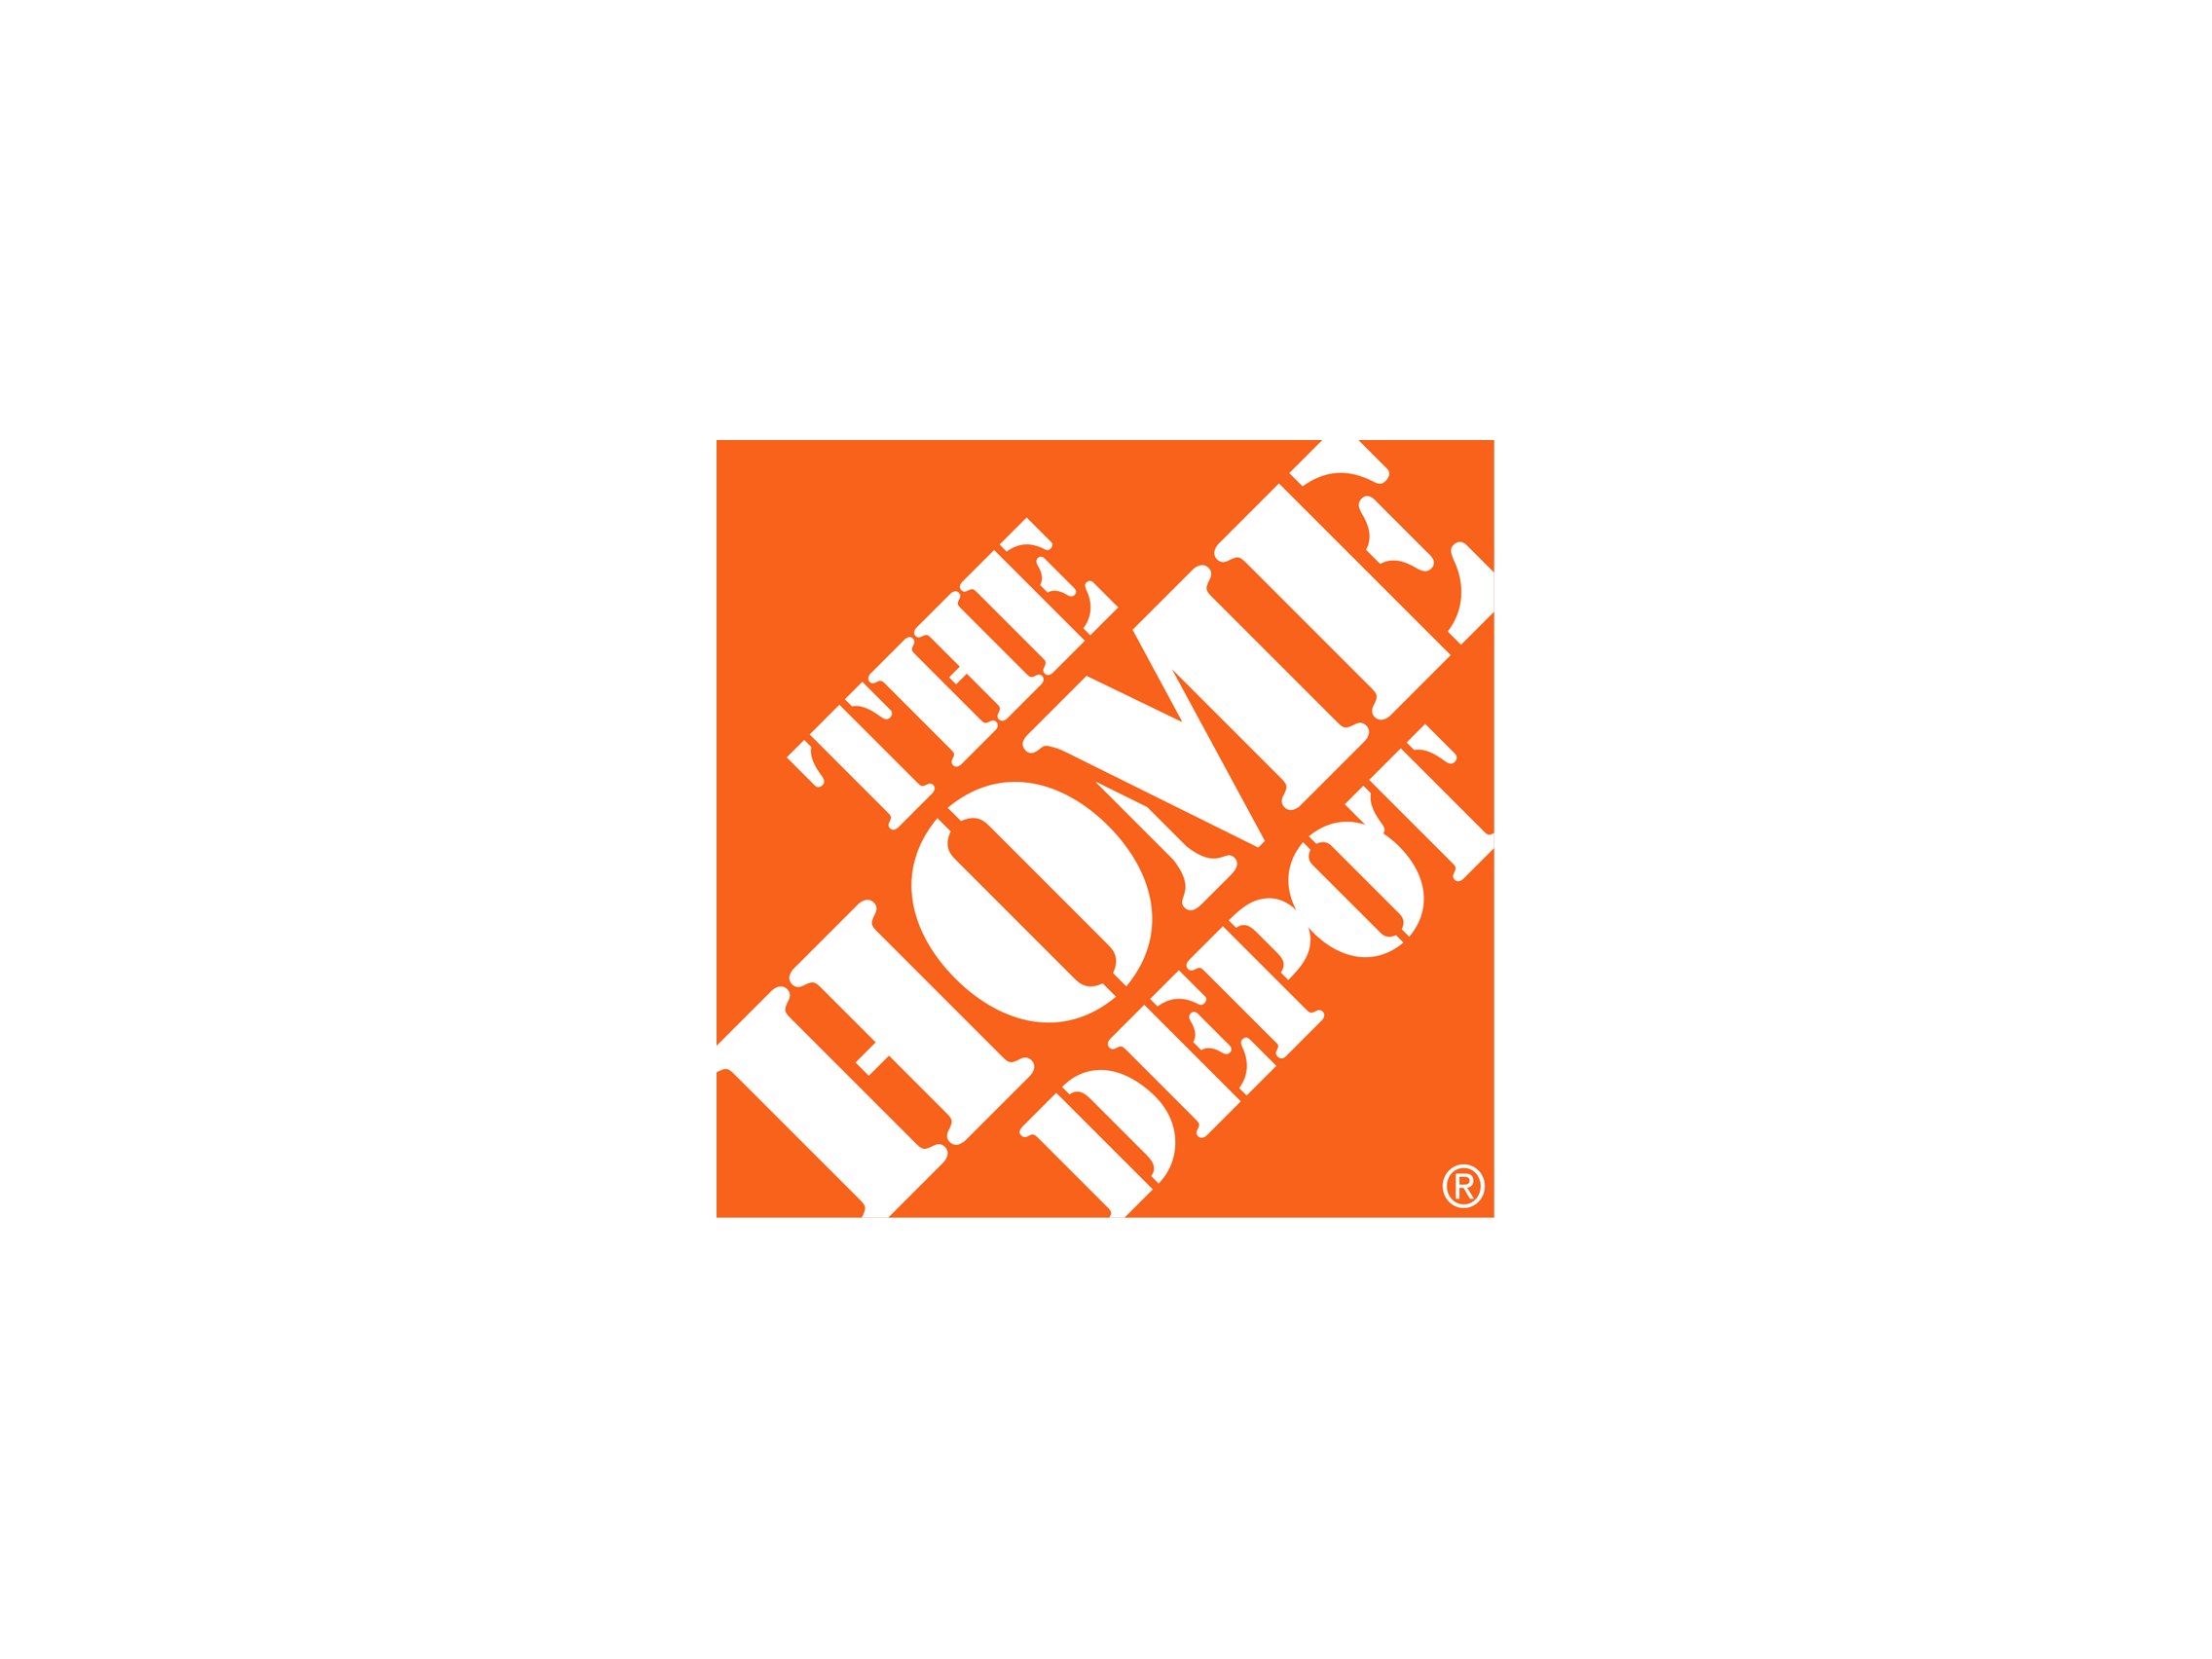 Home depot Logos